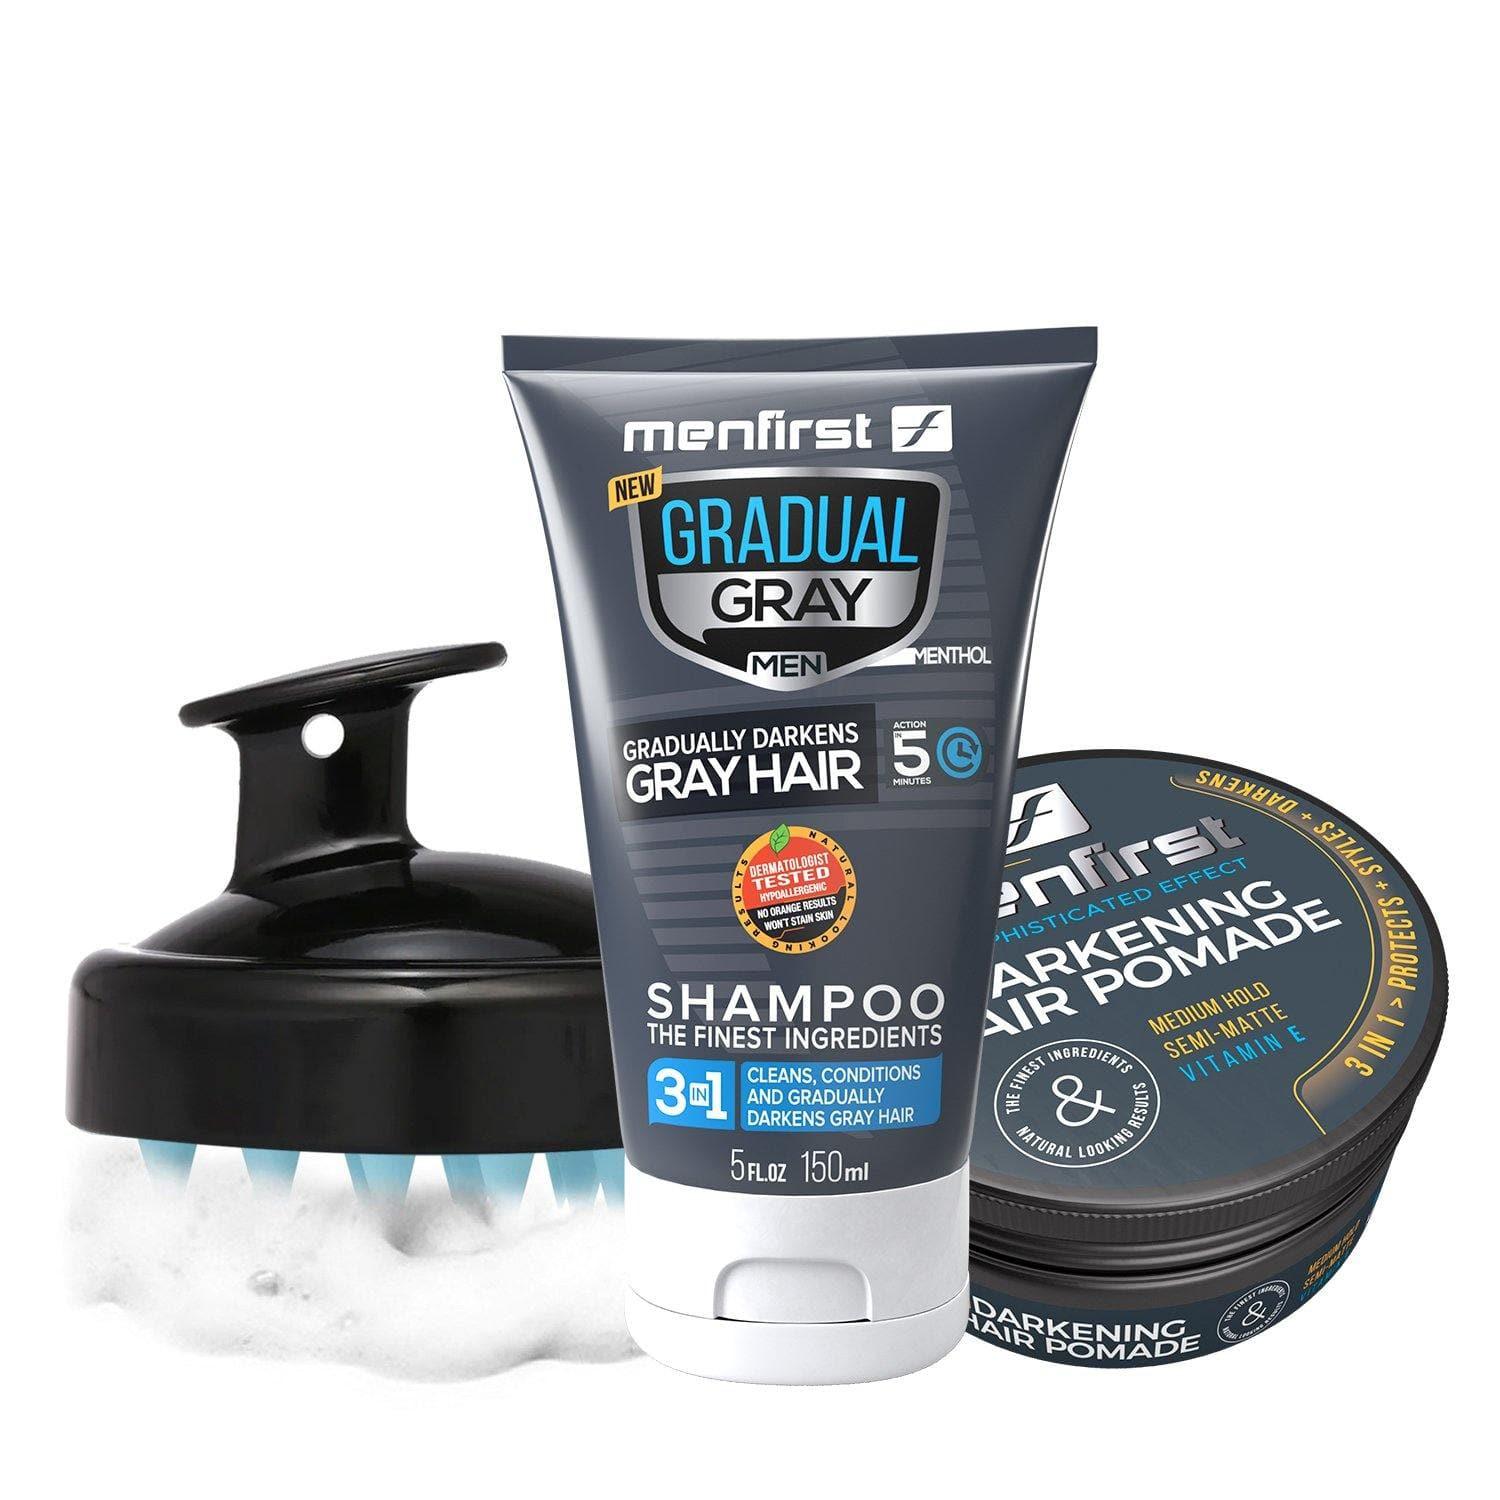 Kit Gradual Gray 3-1 Shampoo + Shampoo Brush Soft + Darkening Hair Pomade - Menfirst - Dye hair